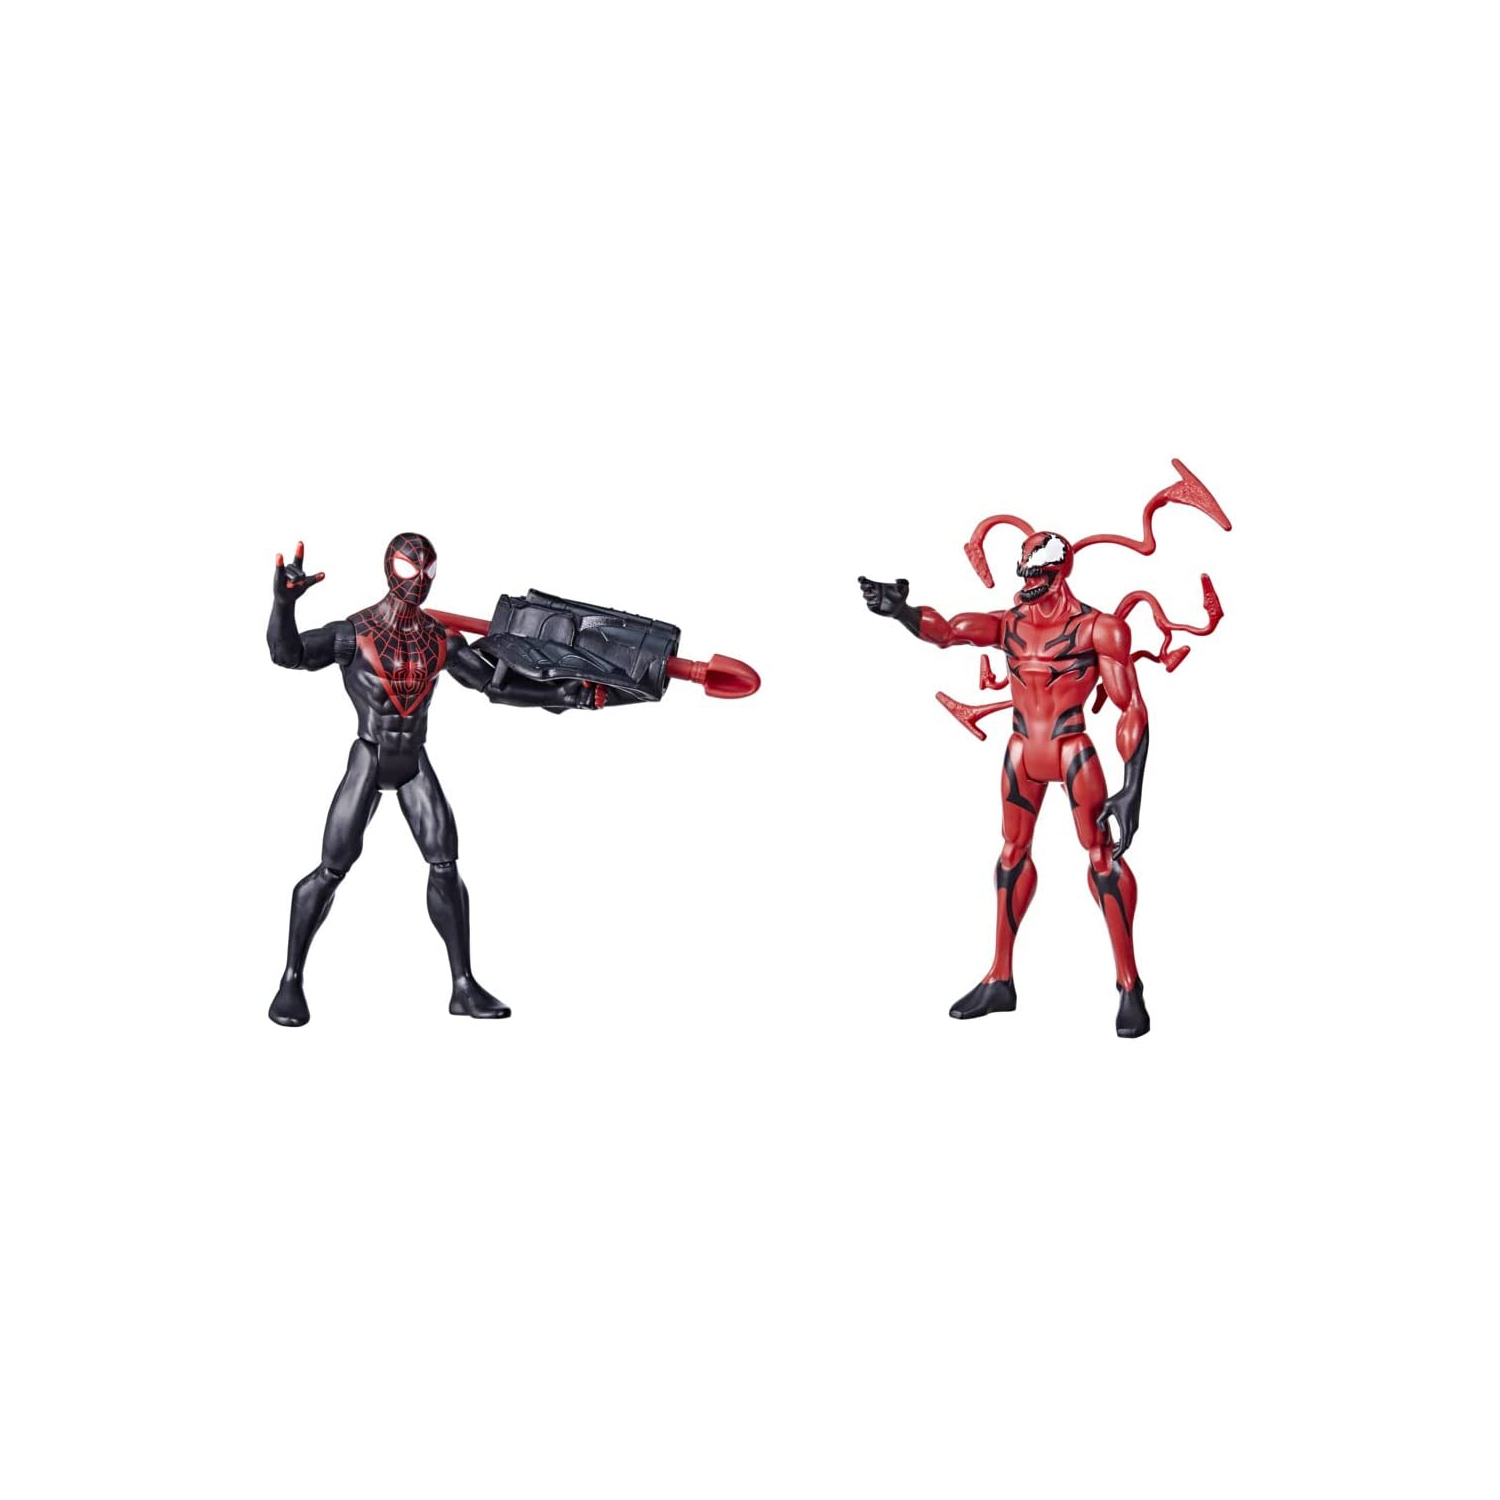 Hasbro Miles Morales vs Carnage (2-Pack) Marvel Spider-Man Battle Packs Action Figures